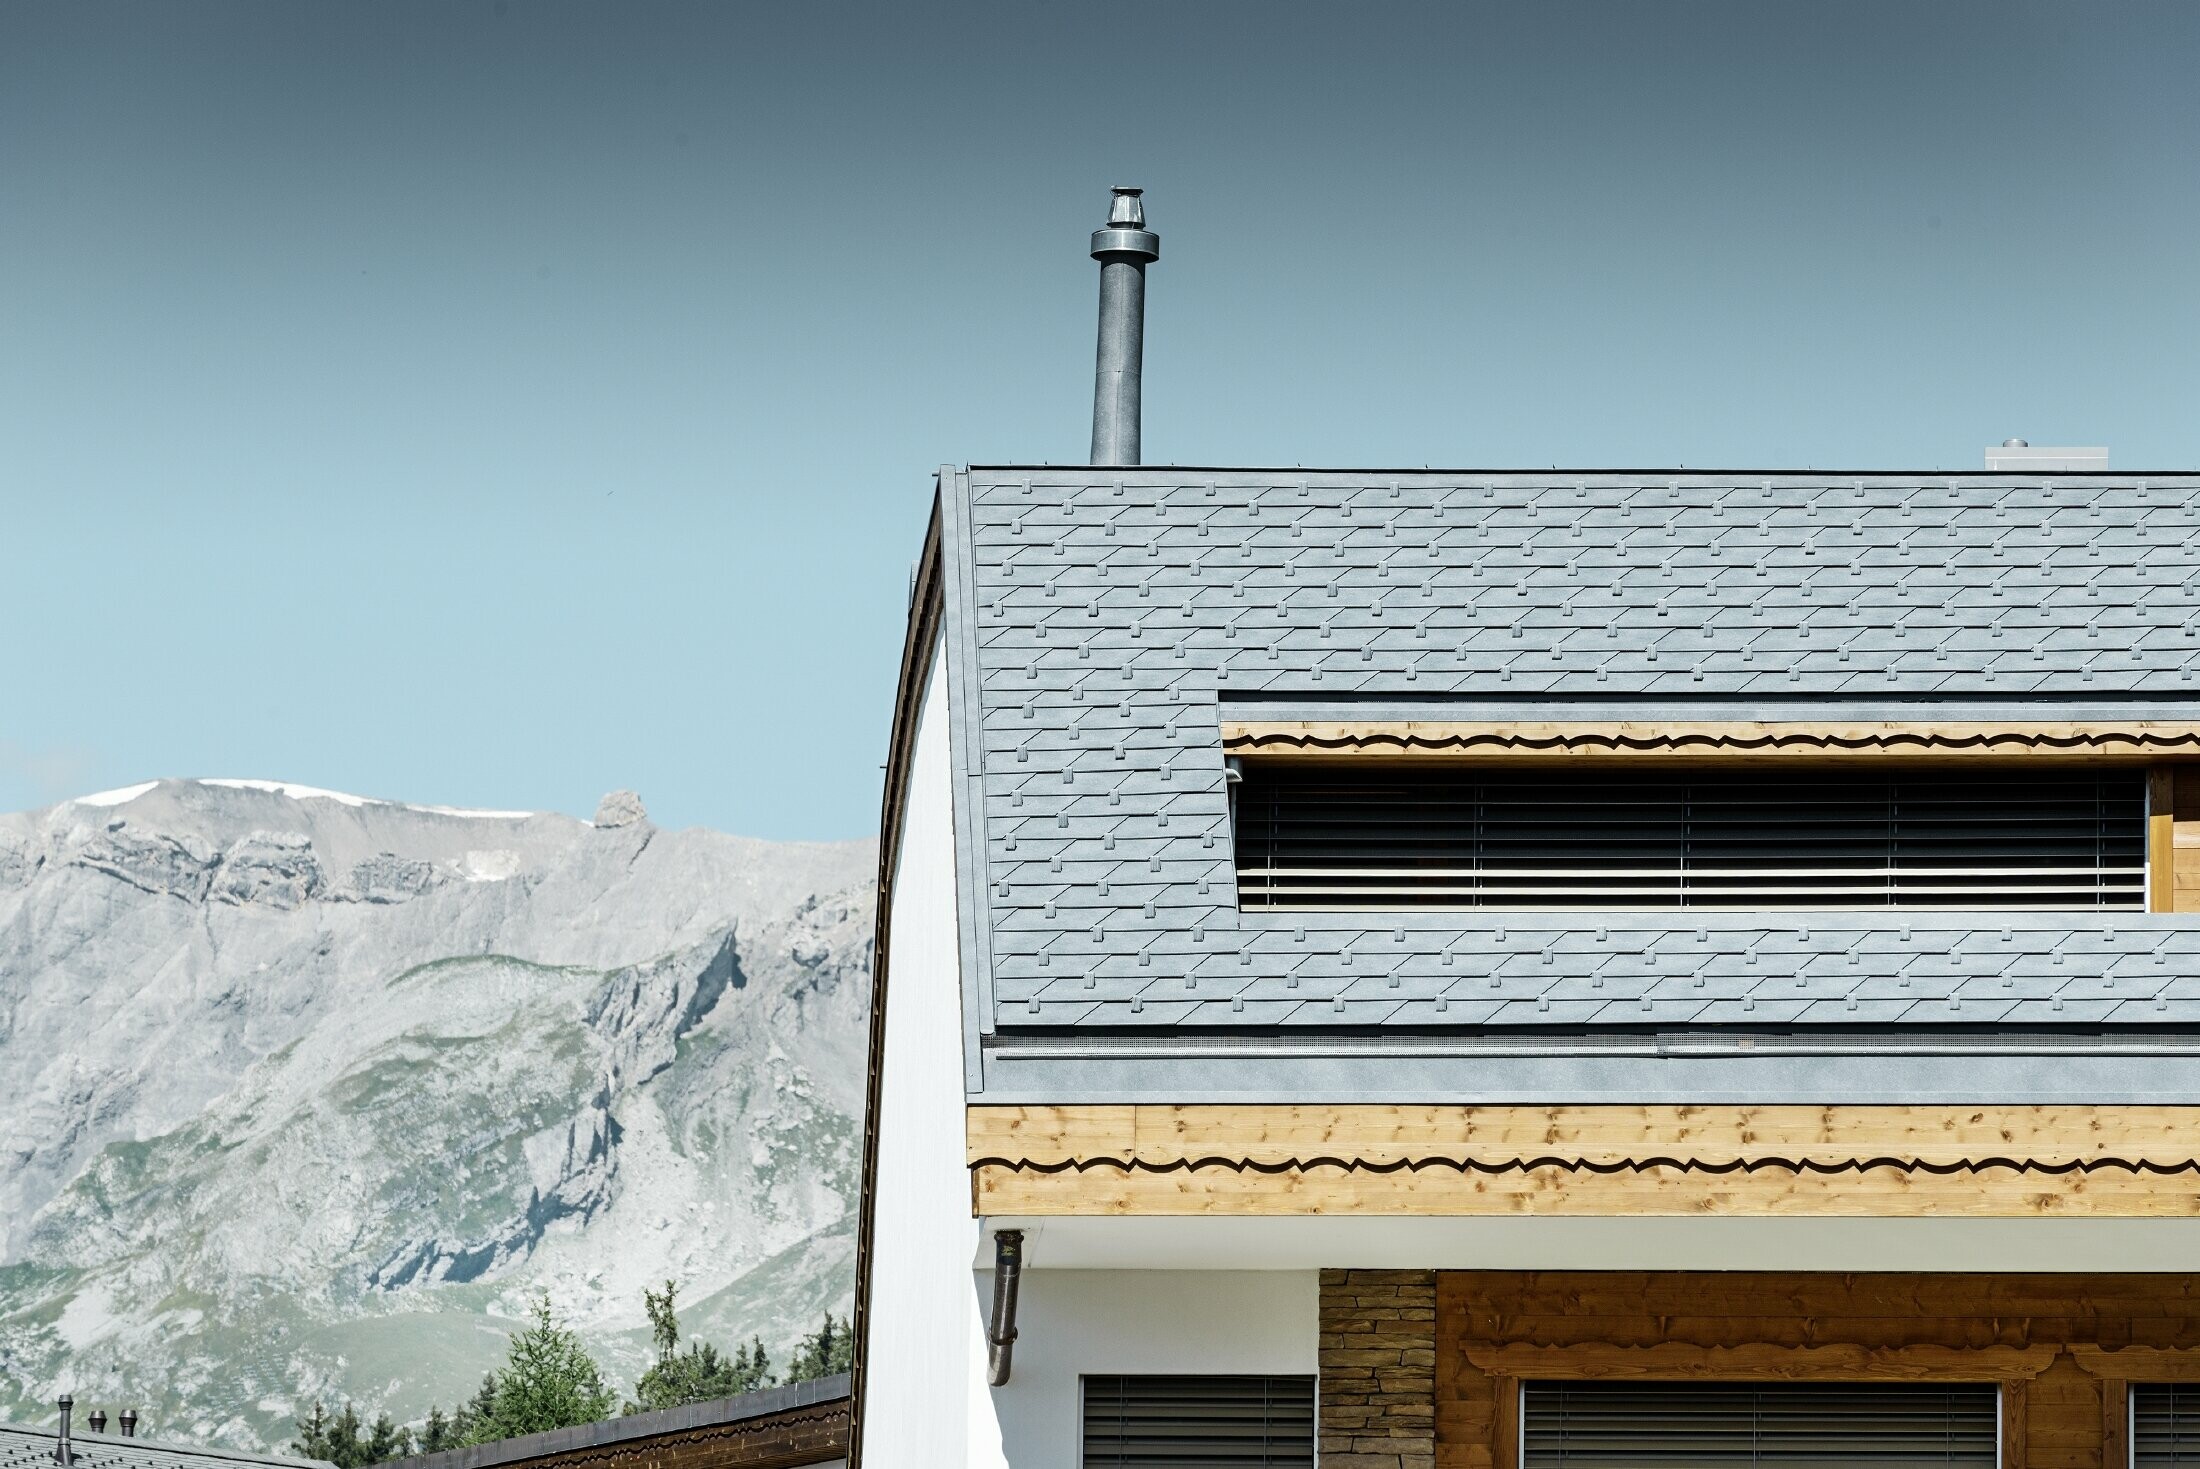 Immeuble d’habitation de Crans-Montana (Suisse) avec les Alpes en arrière-plan — Façade intégrant de nombreux éléments en bois et dont la toiture a été réalisée avec des bardeaux en aluminium PREFA de couleur gris pierre